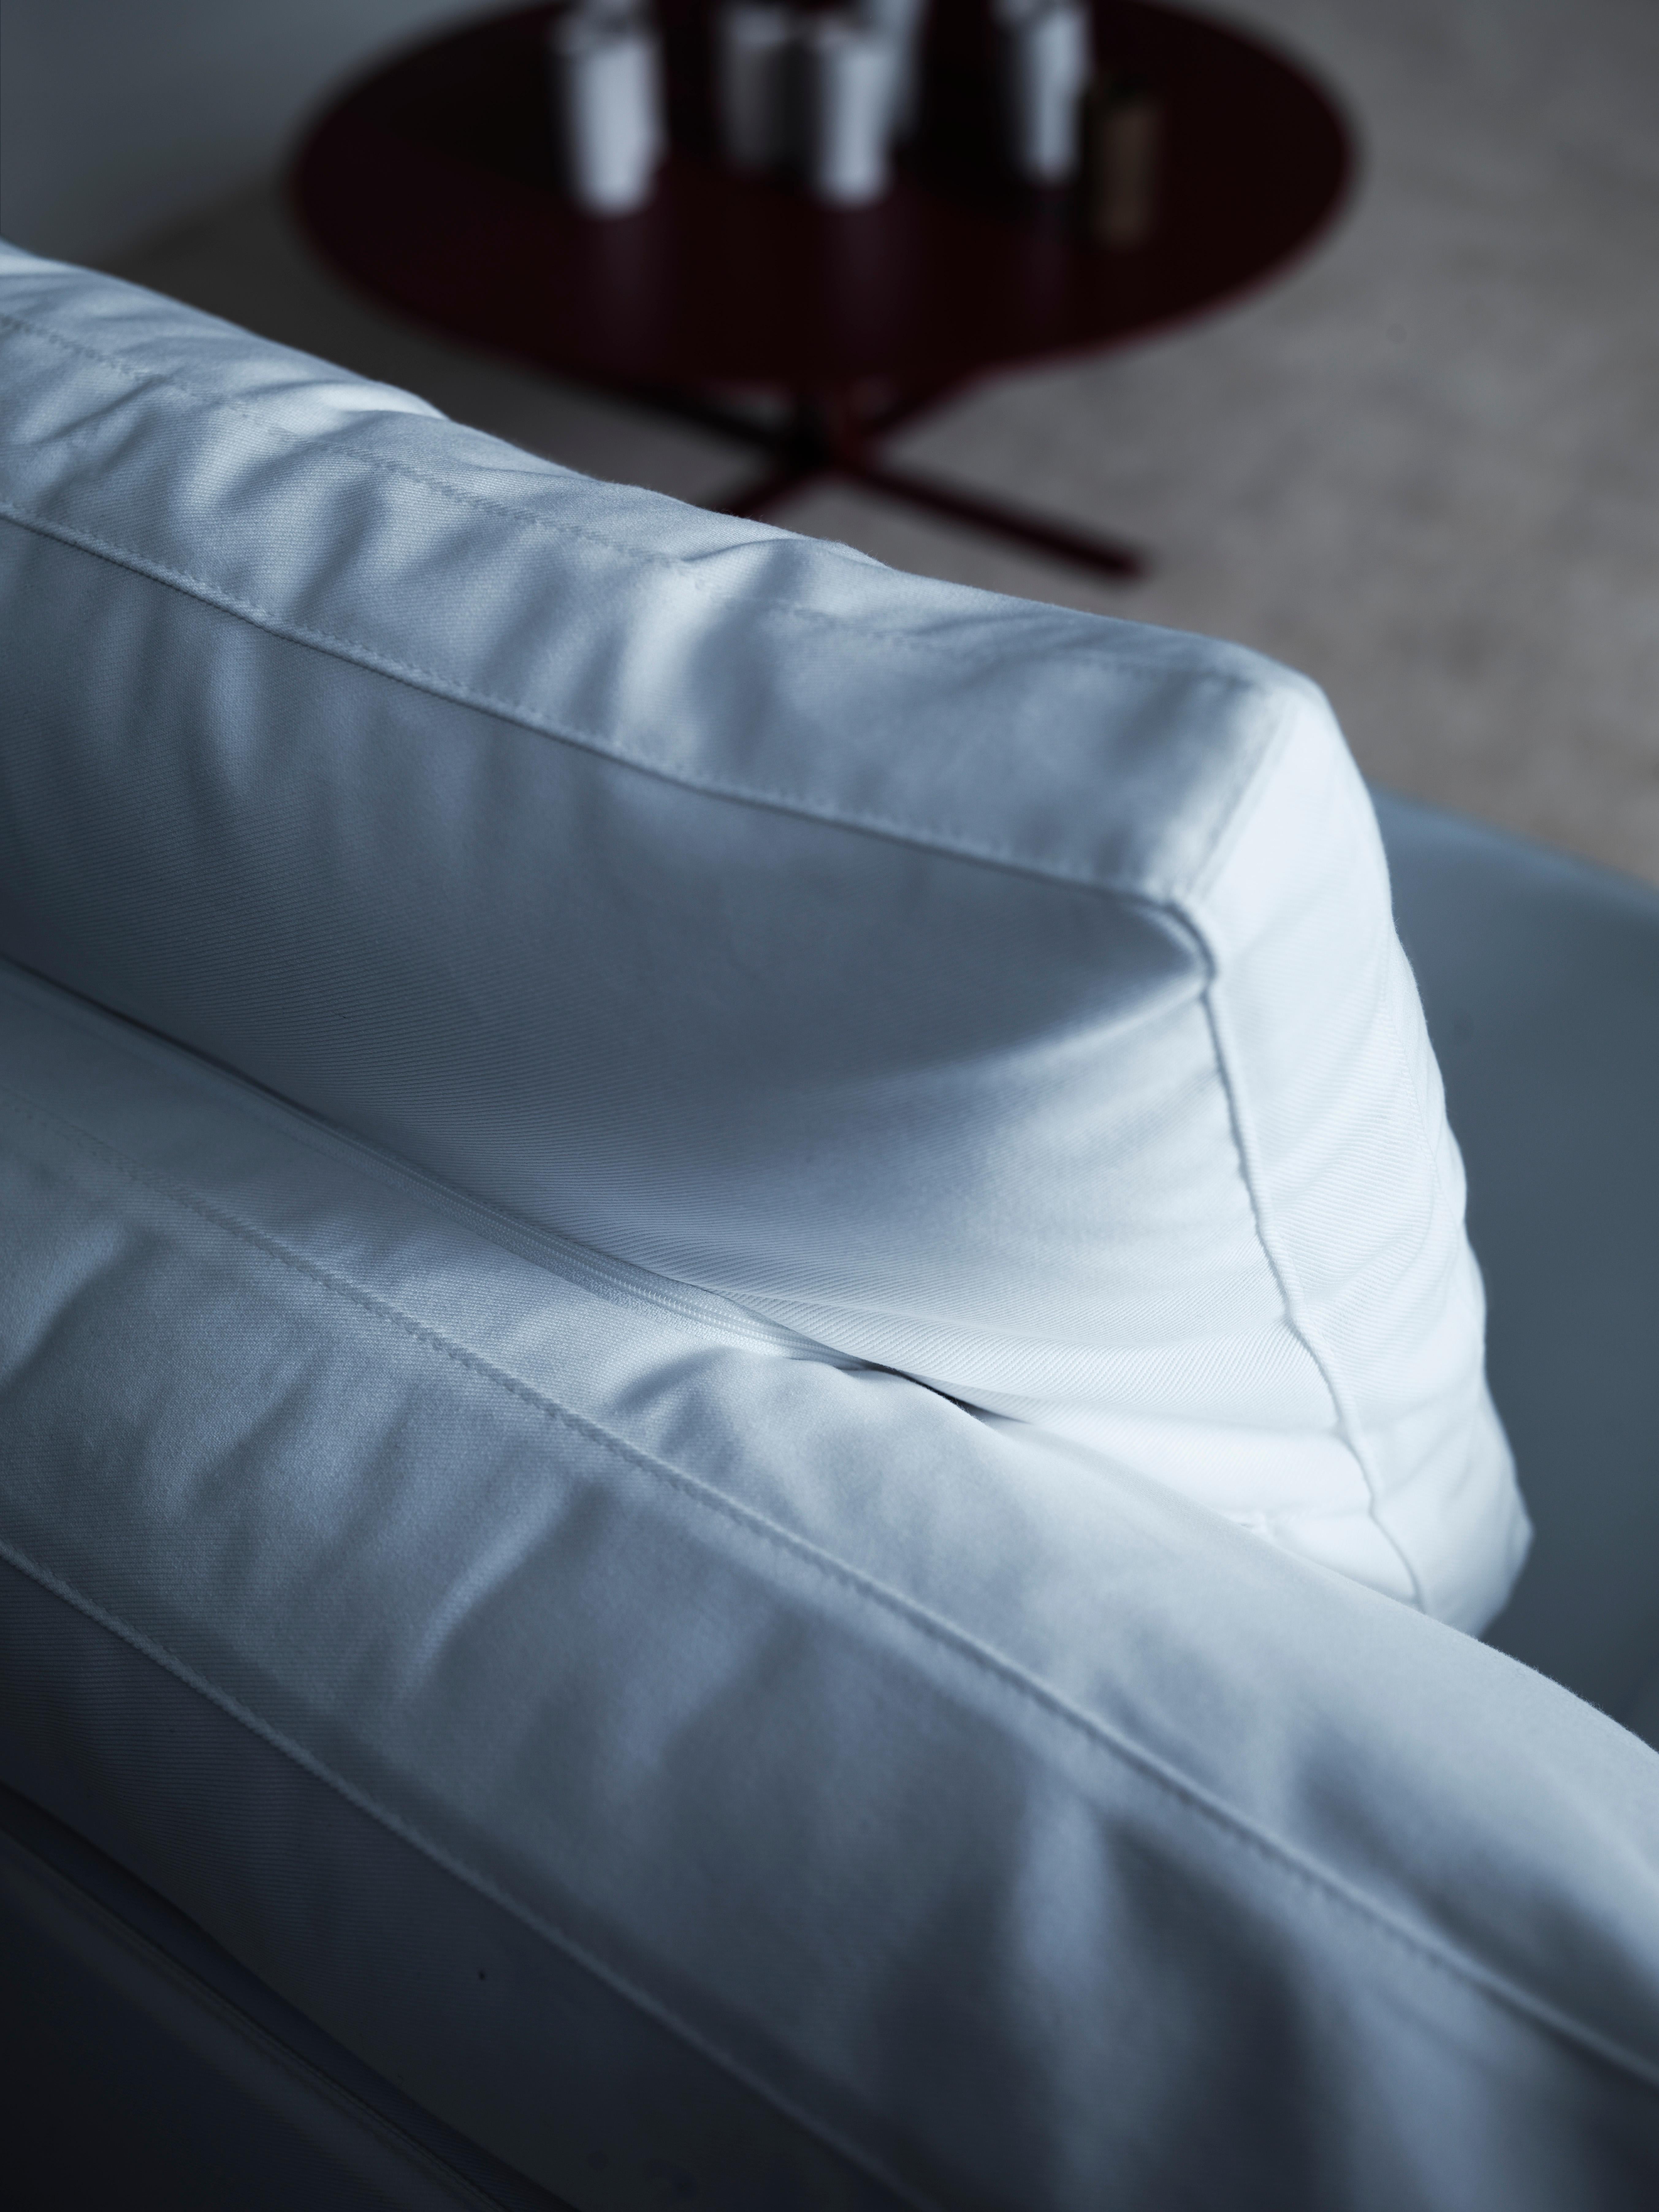 Der Livingstone-Wannensessel ist die perfekte Ergänzung zum Livingstone-Sofa. Mit seinen ausgewogenen Proportionen gehört er zu den Objekten, deren Schönheit nie verblasst. Der Stahlrahmen passt perfekt zu Leder- und Stoffbezügen. Vollständig